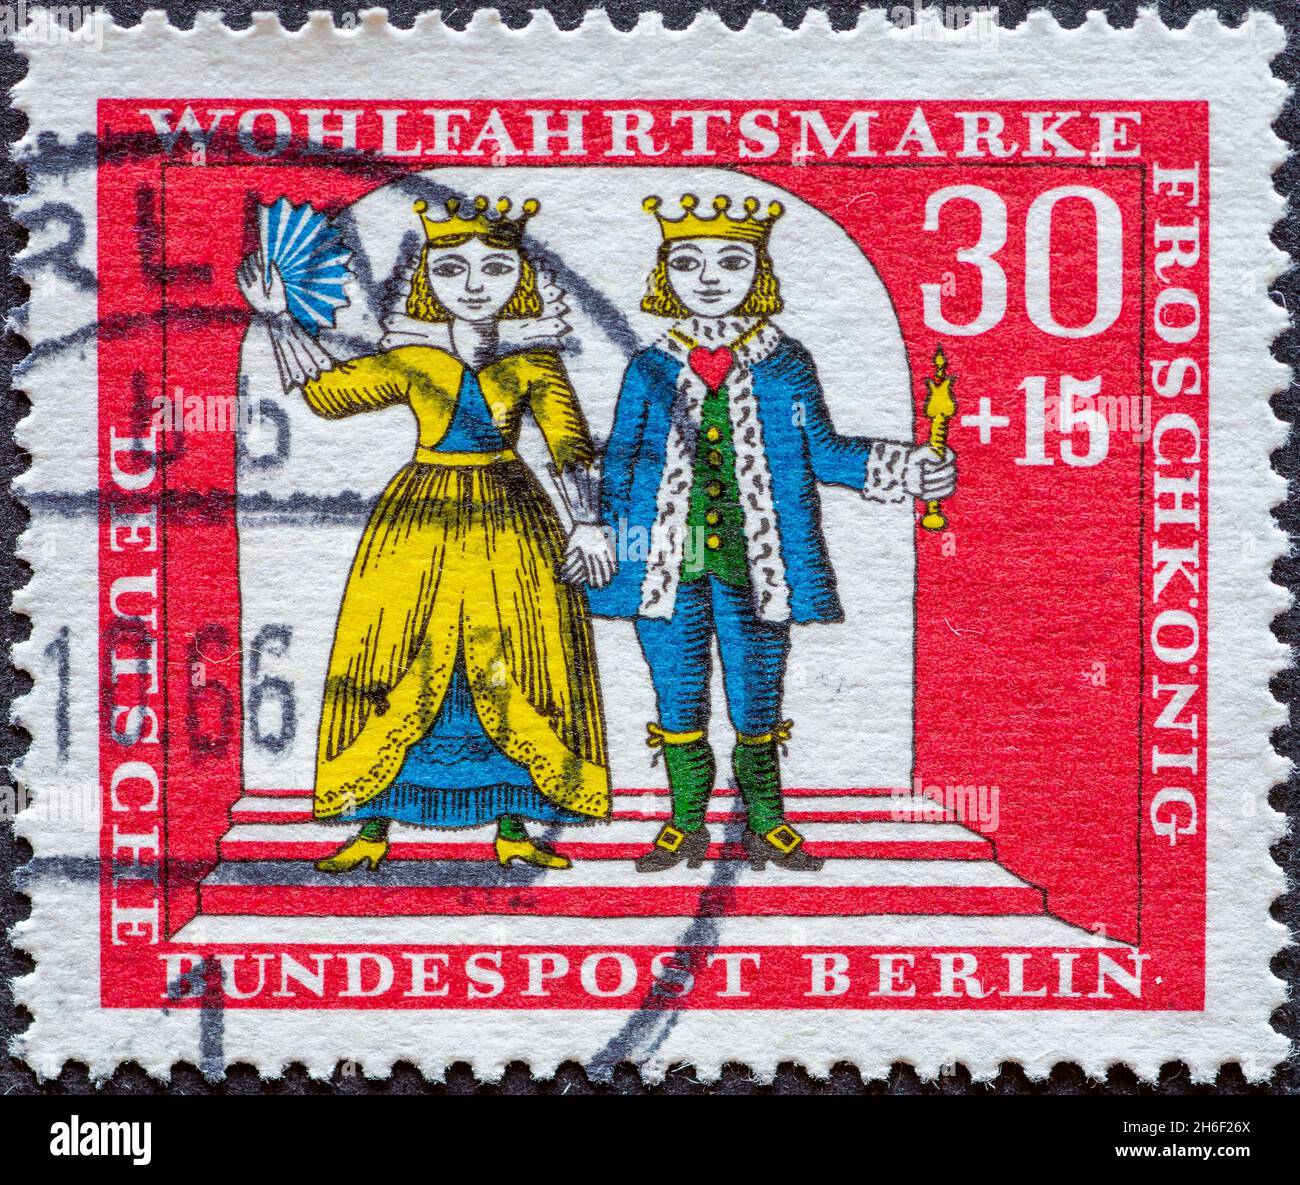 ALLEMAGNE, Berlin - VERS 1966: Timbre-poste d'Allemagne, Berlin montrant une photo du conte de fées des Frères Grimm: Le roi de la grenouille.Avec TH Banque D'Images